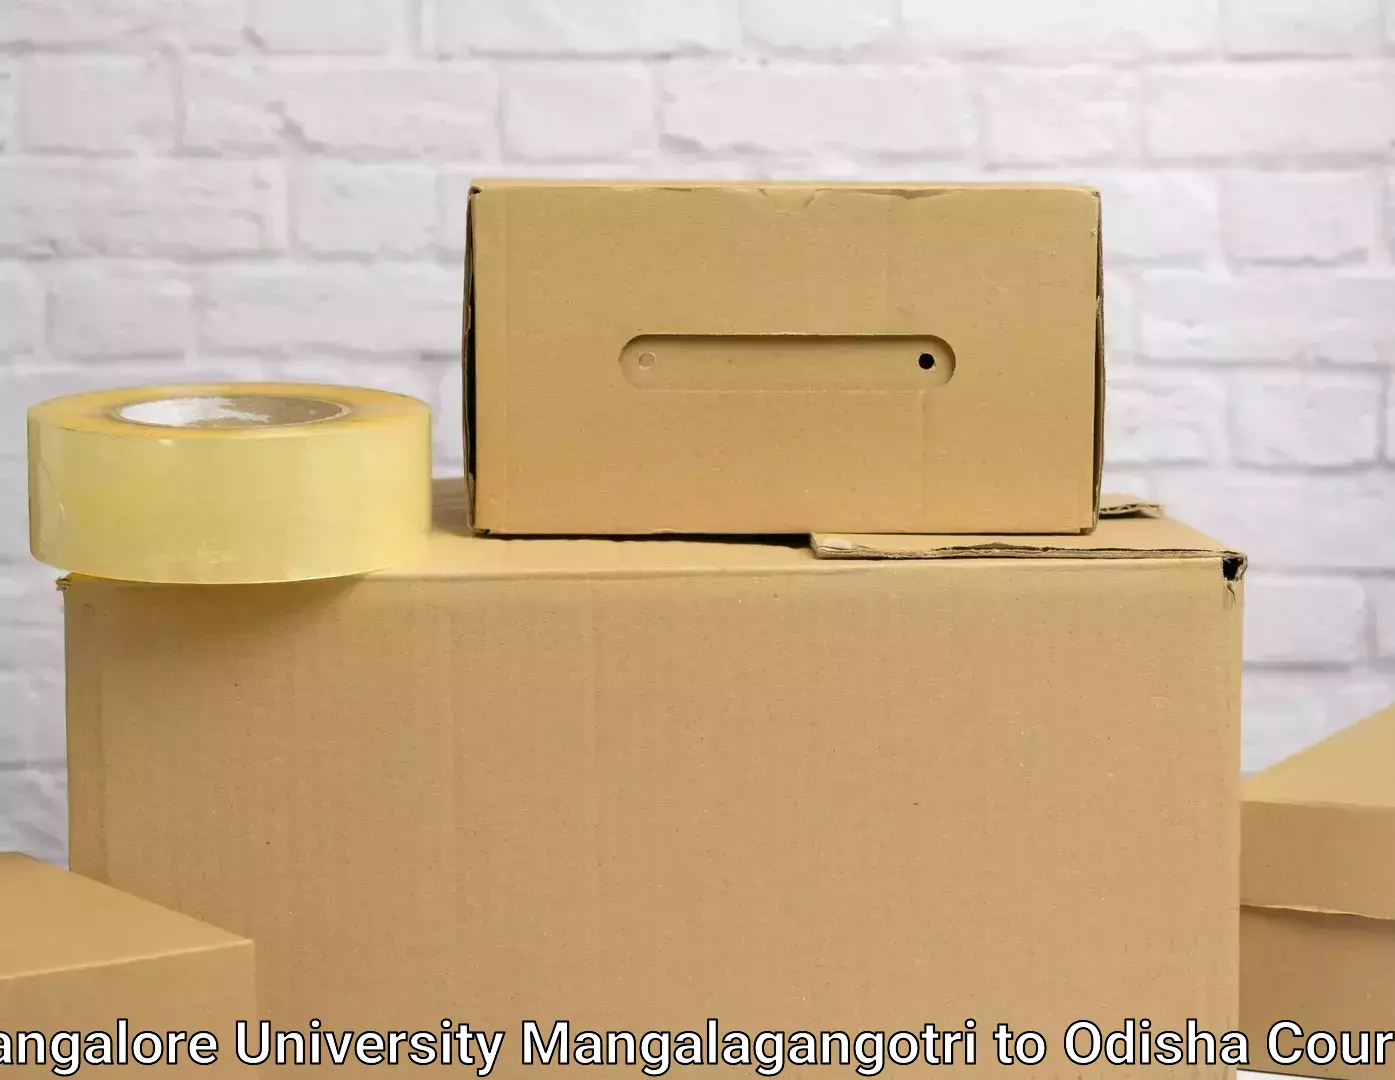 Residential moving experts Mangalore University Mangalagangotri to Umerkote